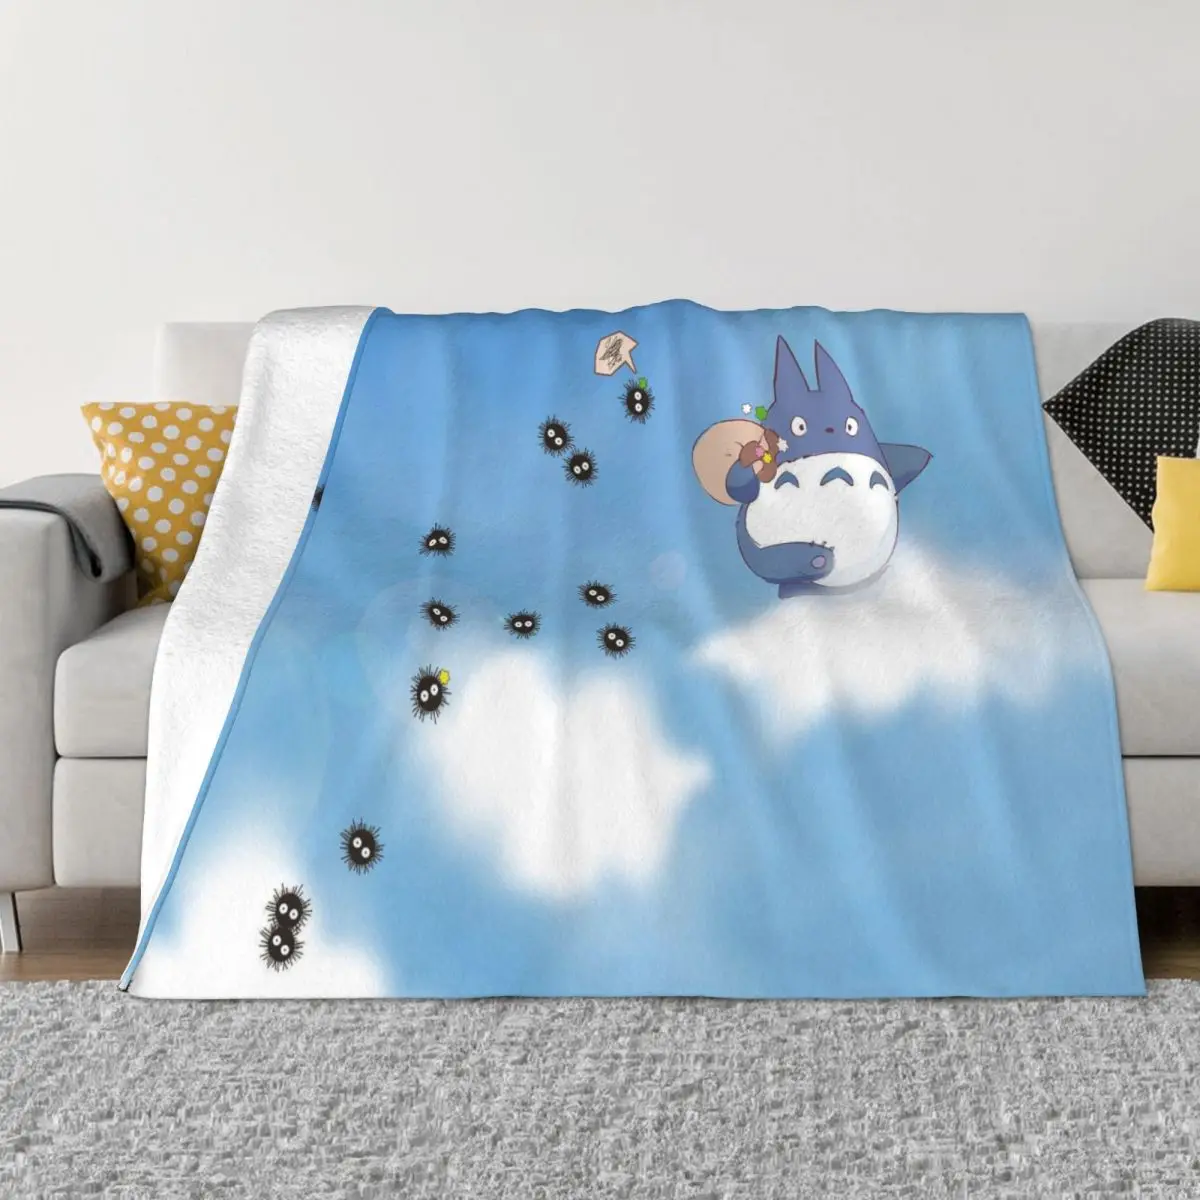 

Одеяло Totoro из аниме с флисовой подкладкой, многофункциональное ультрамягкое покрывало для постельного белья, кушетка